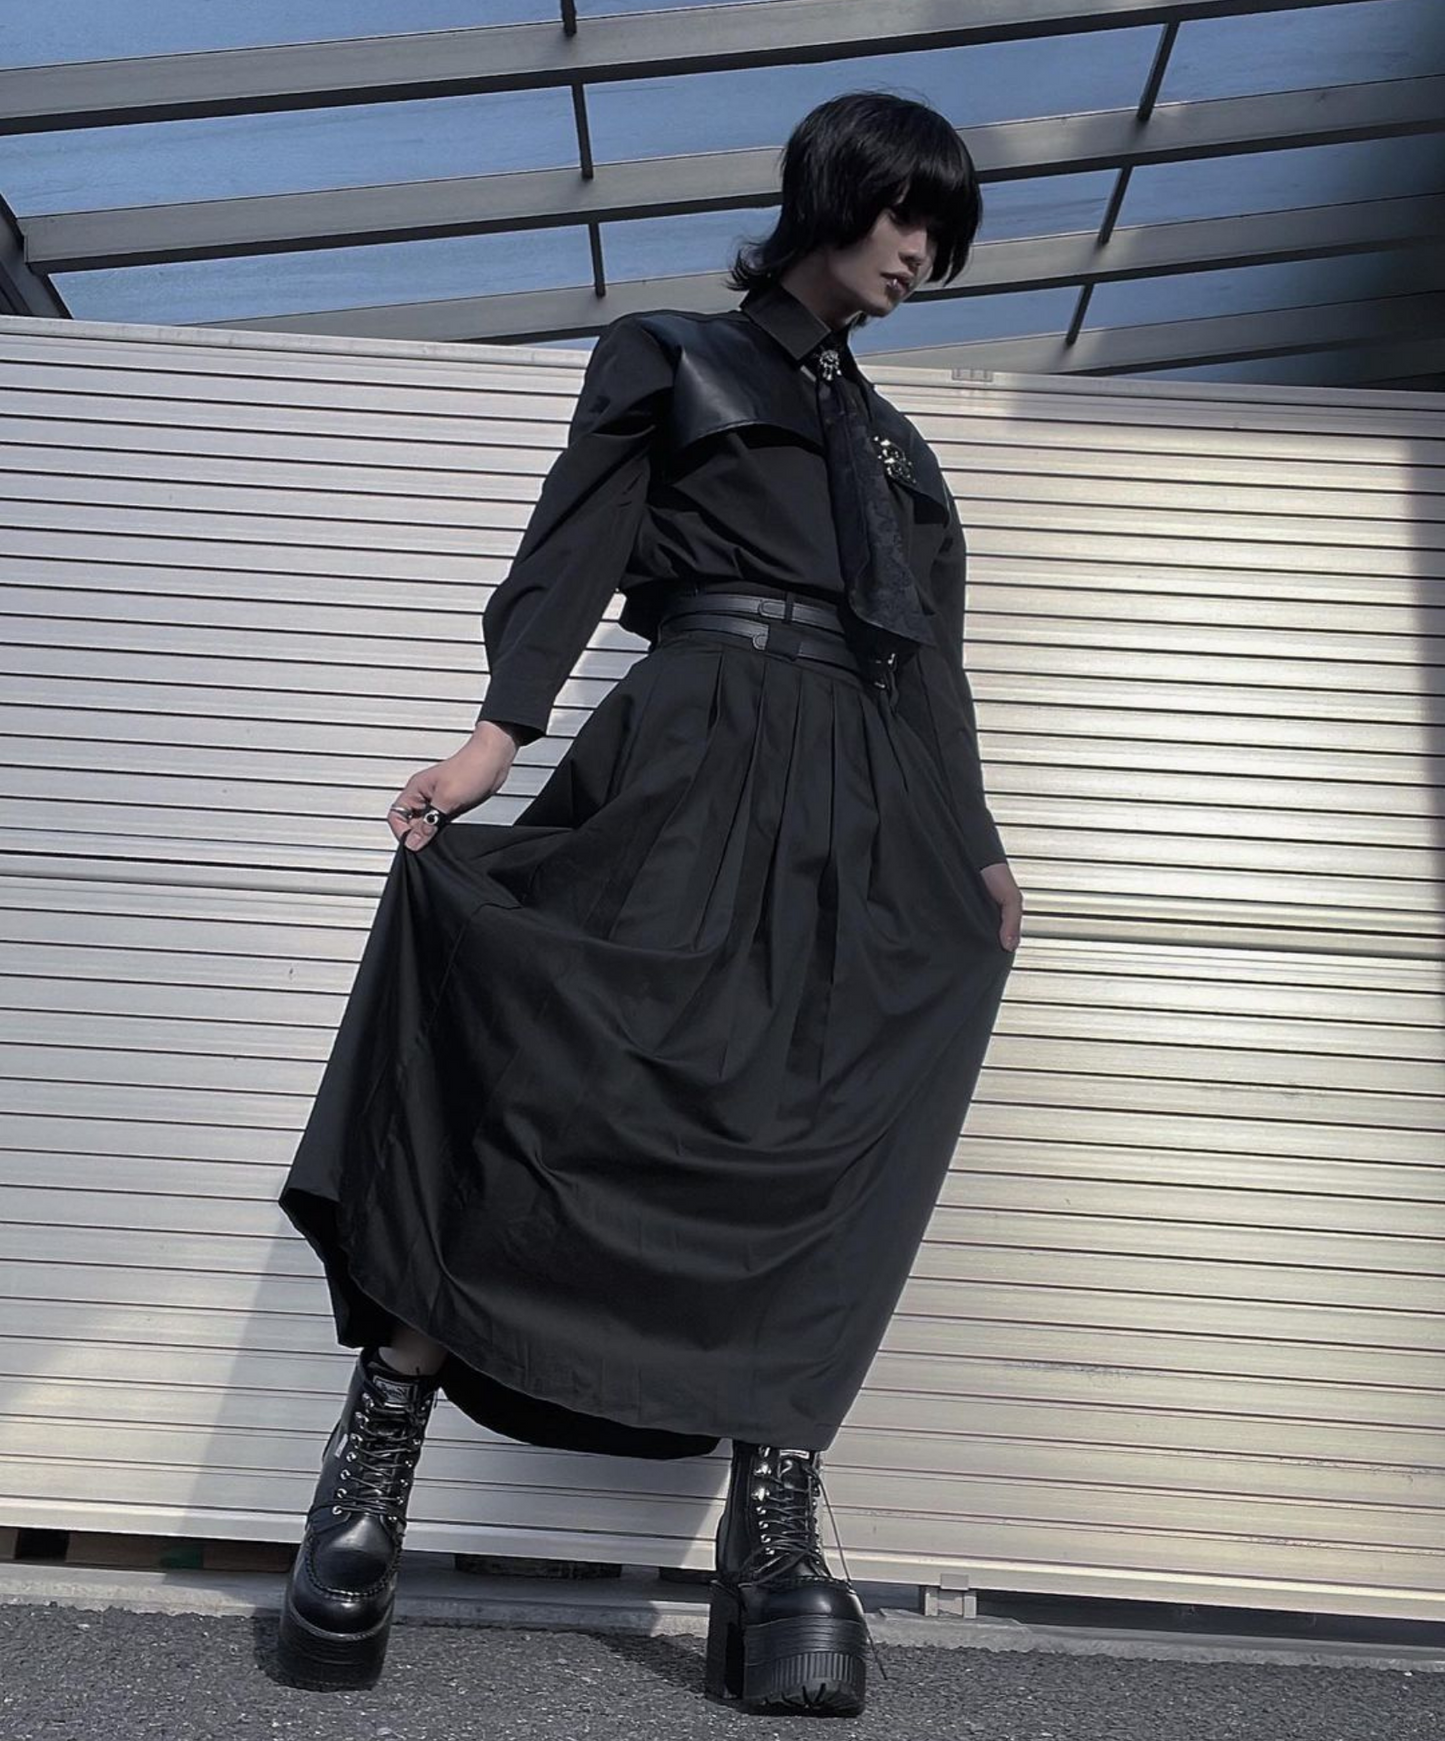 【style31】dark mode outfit set EN1092（ shirt + skirt set）